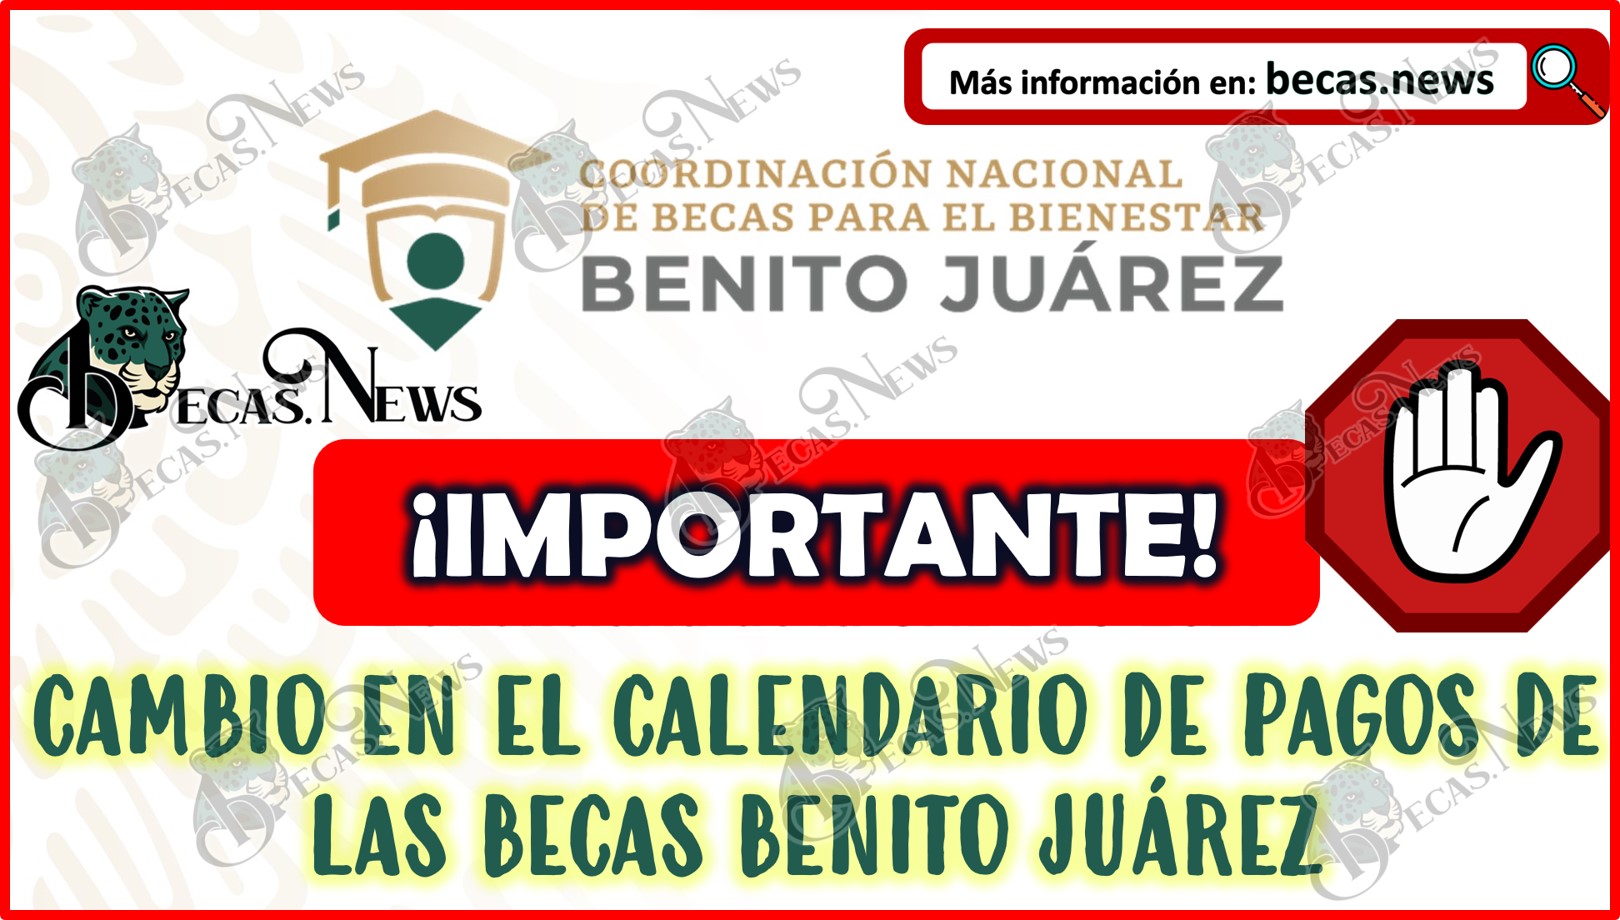 ¡CNBBBJ Anuncia CAMBIO en el calendario de pagos de las Becas Benito Juárez!